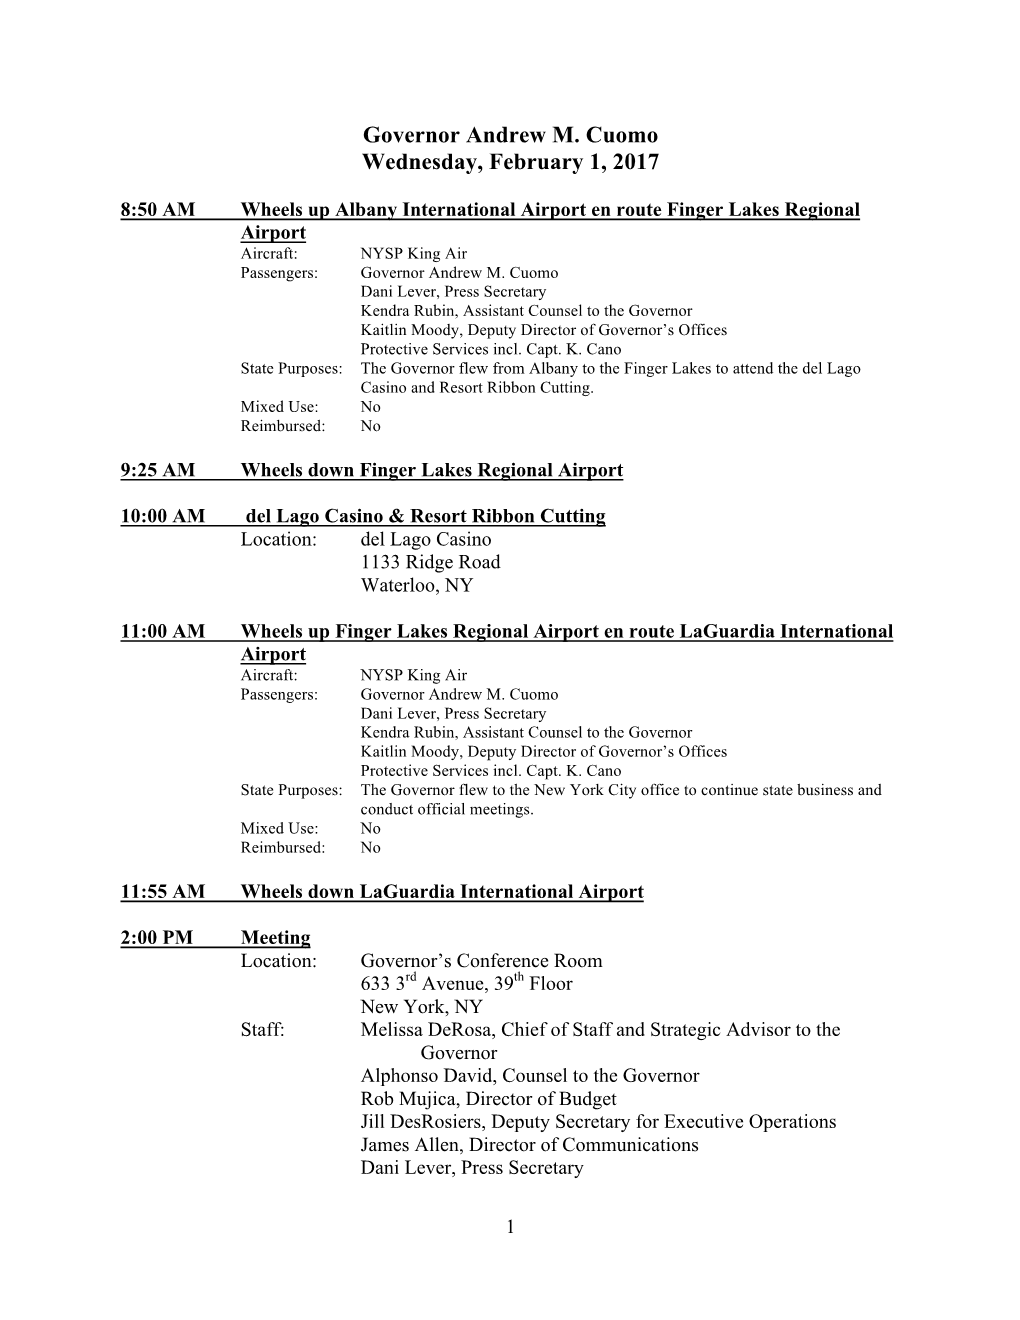 Governor Andrew M. Cuomo Wednesday, February 1, 2017